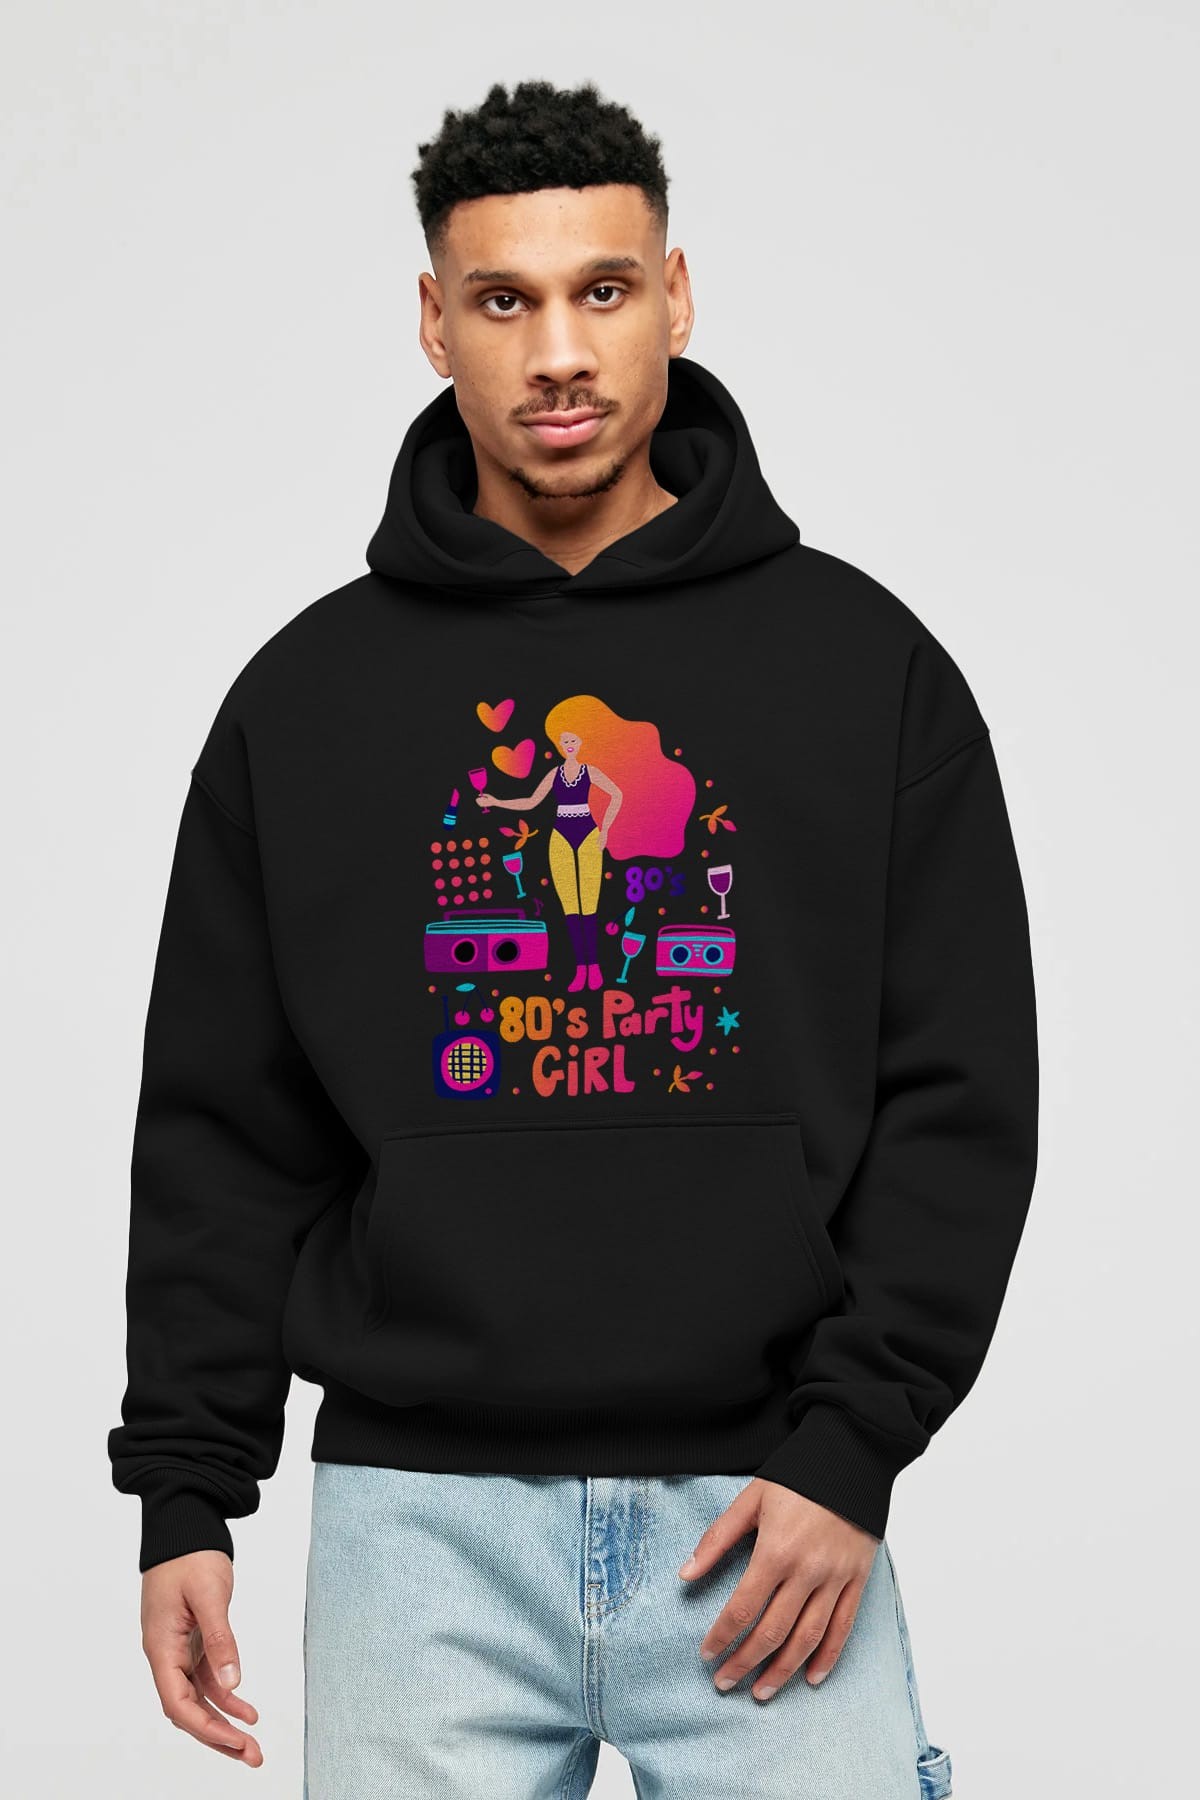 Retro Girl Party Ön Baskılı Oversize Hoodie Kapüşonlu Sweatshirt Erkek Kadın Unisex